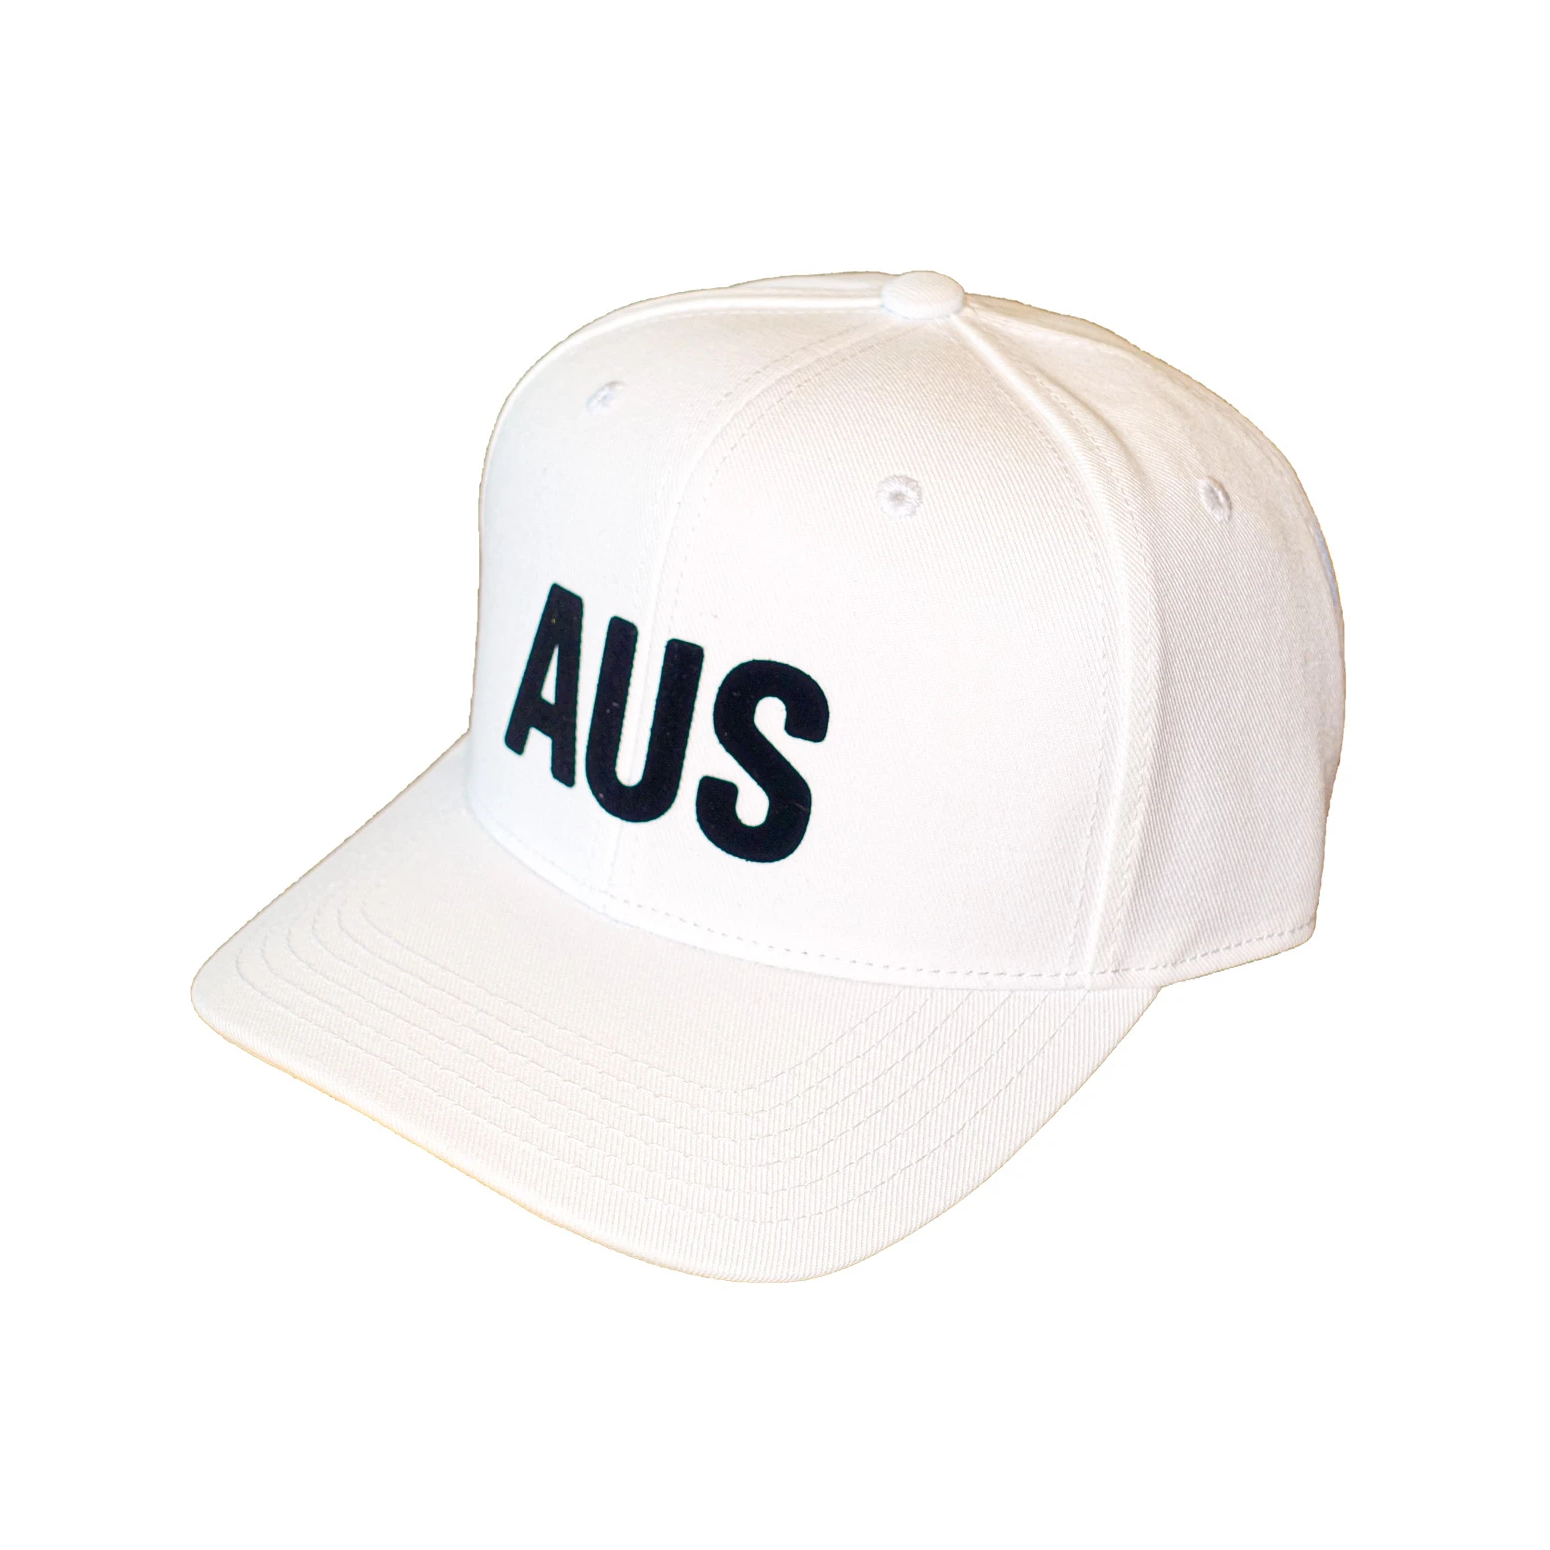 AUS Australia Hat